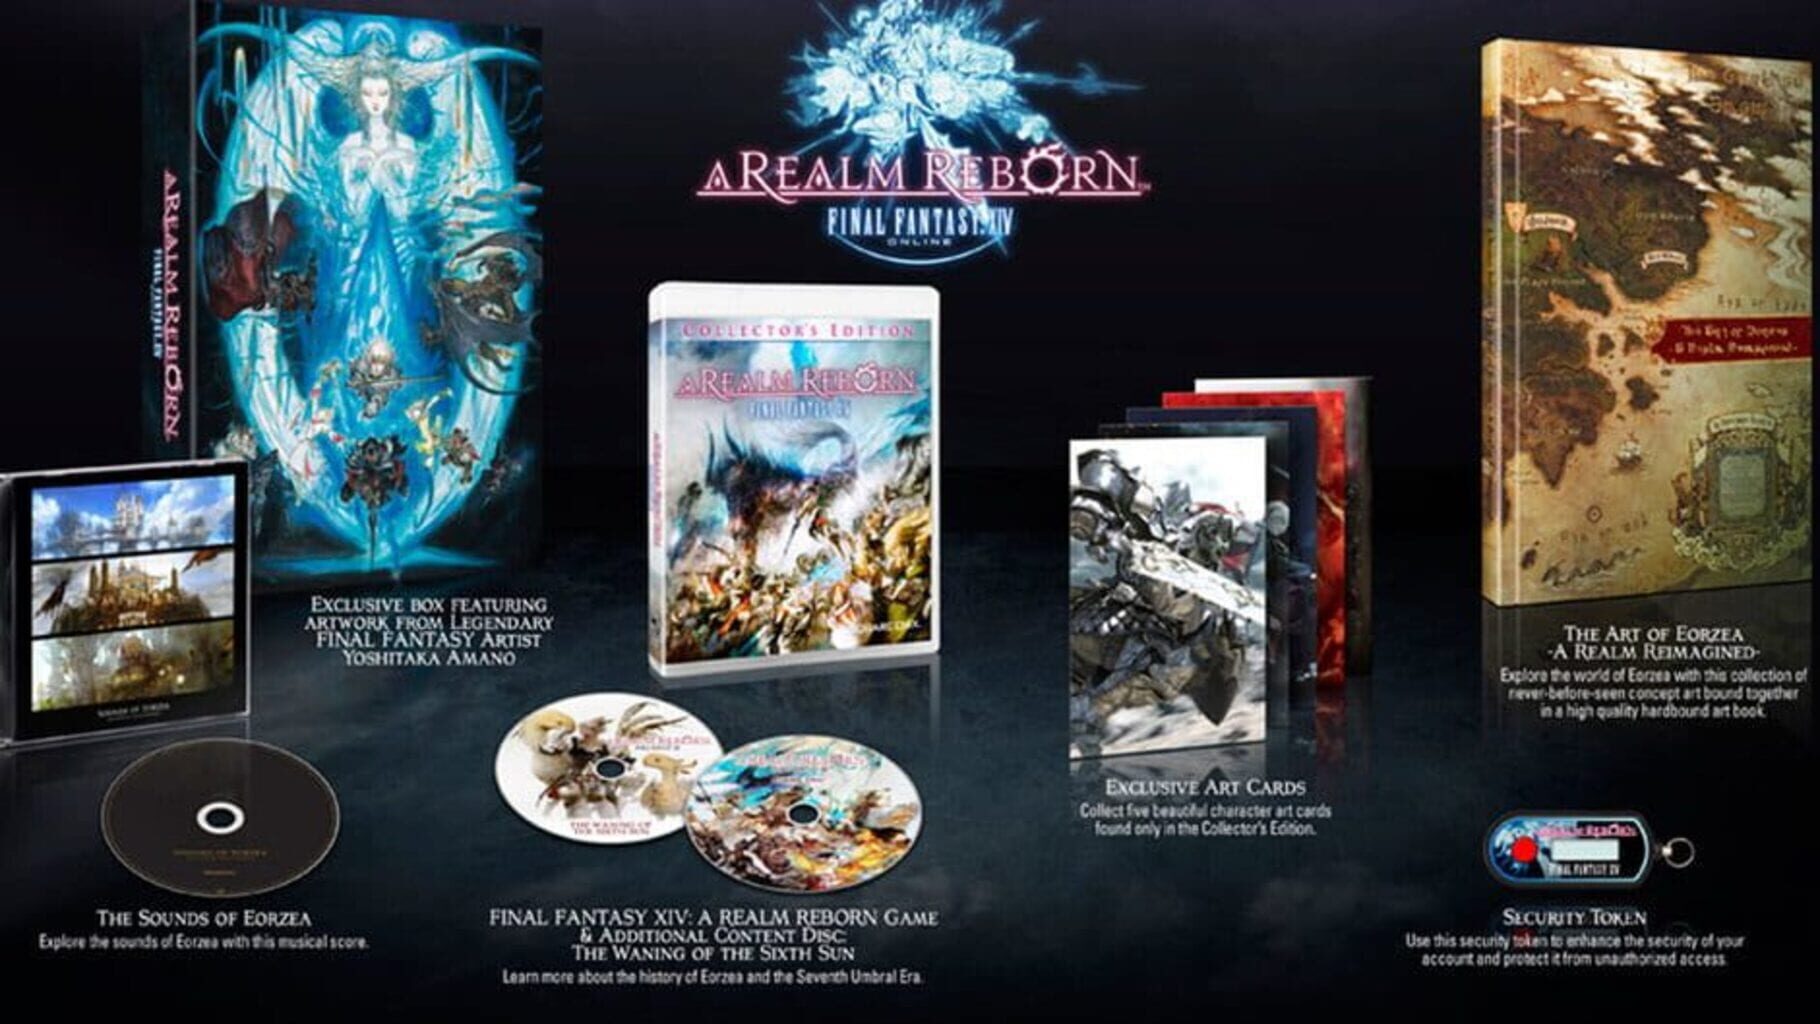 Arte - Final Fantasy XIV: A Realm Reborn - Collector's Edition